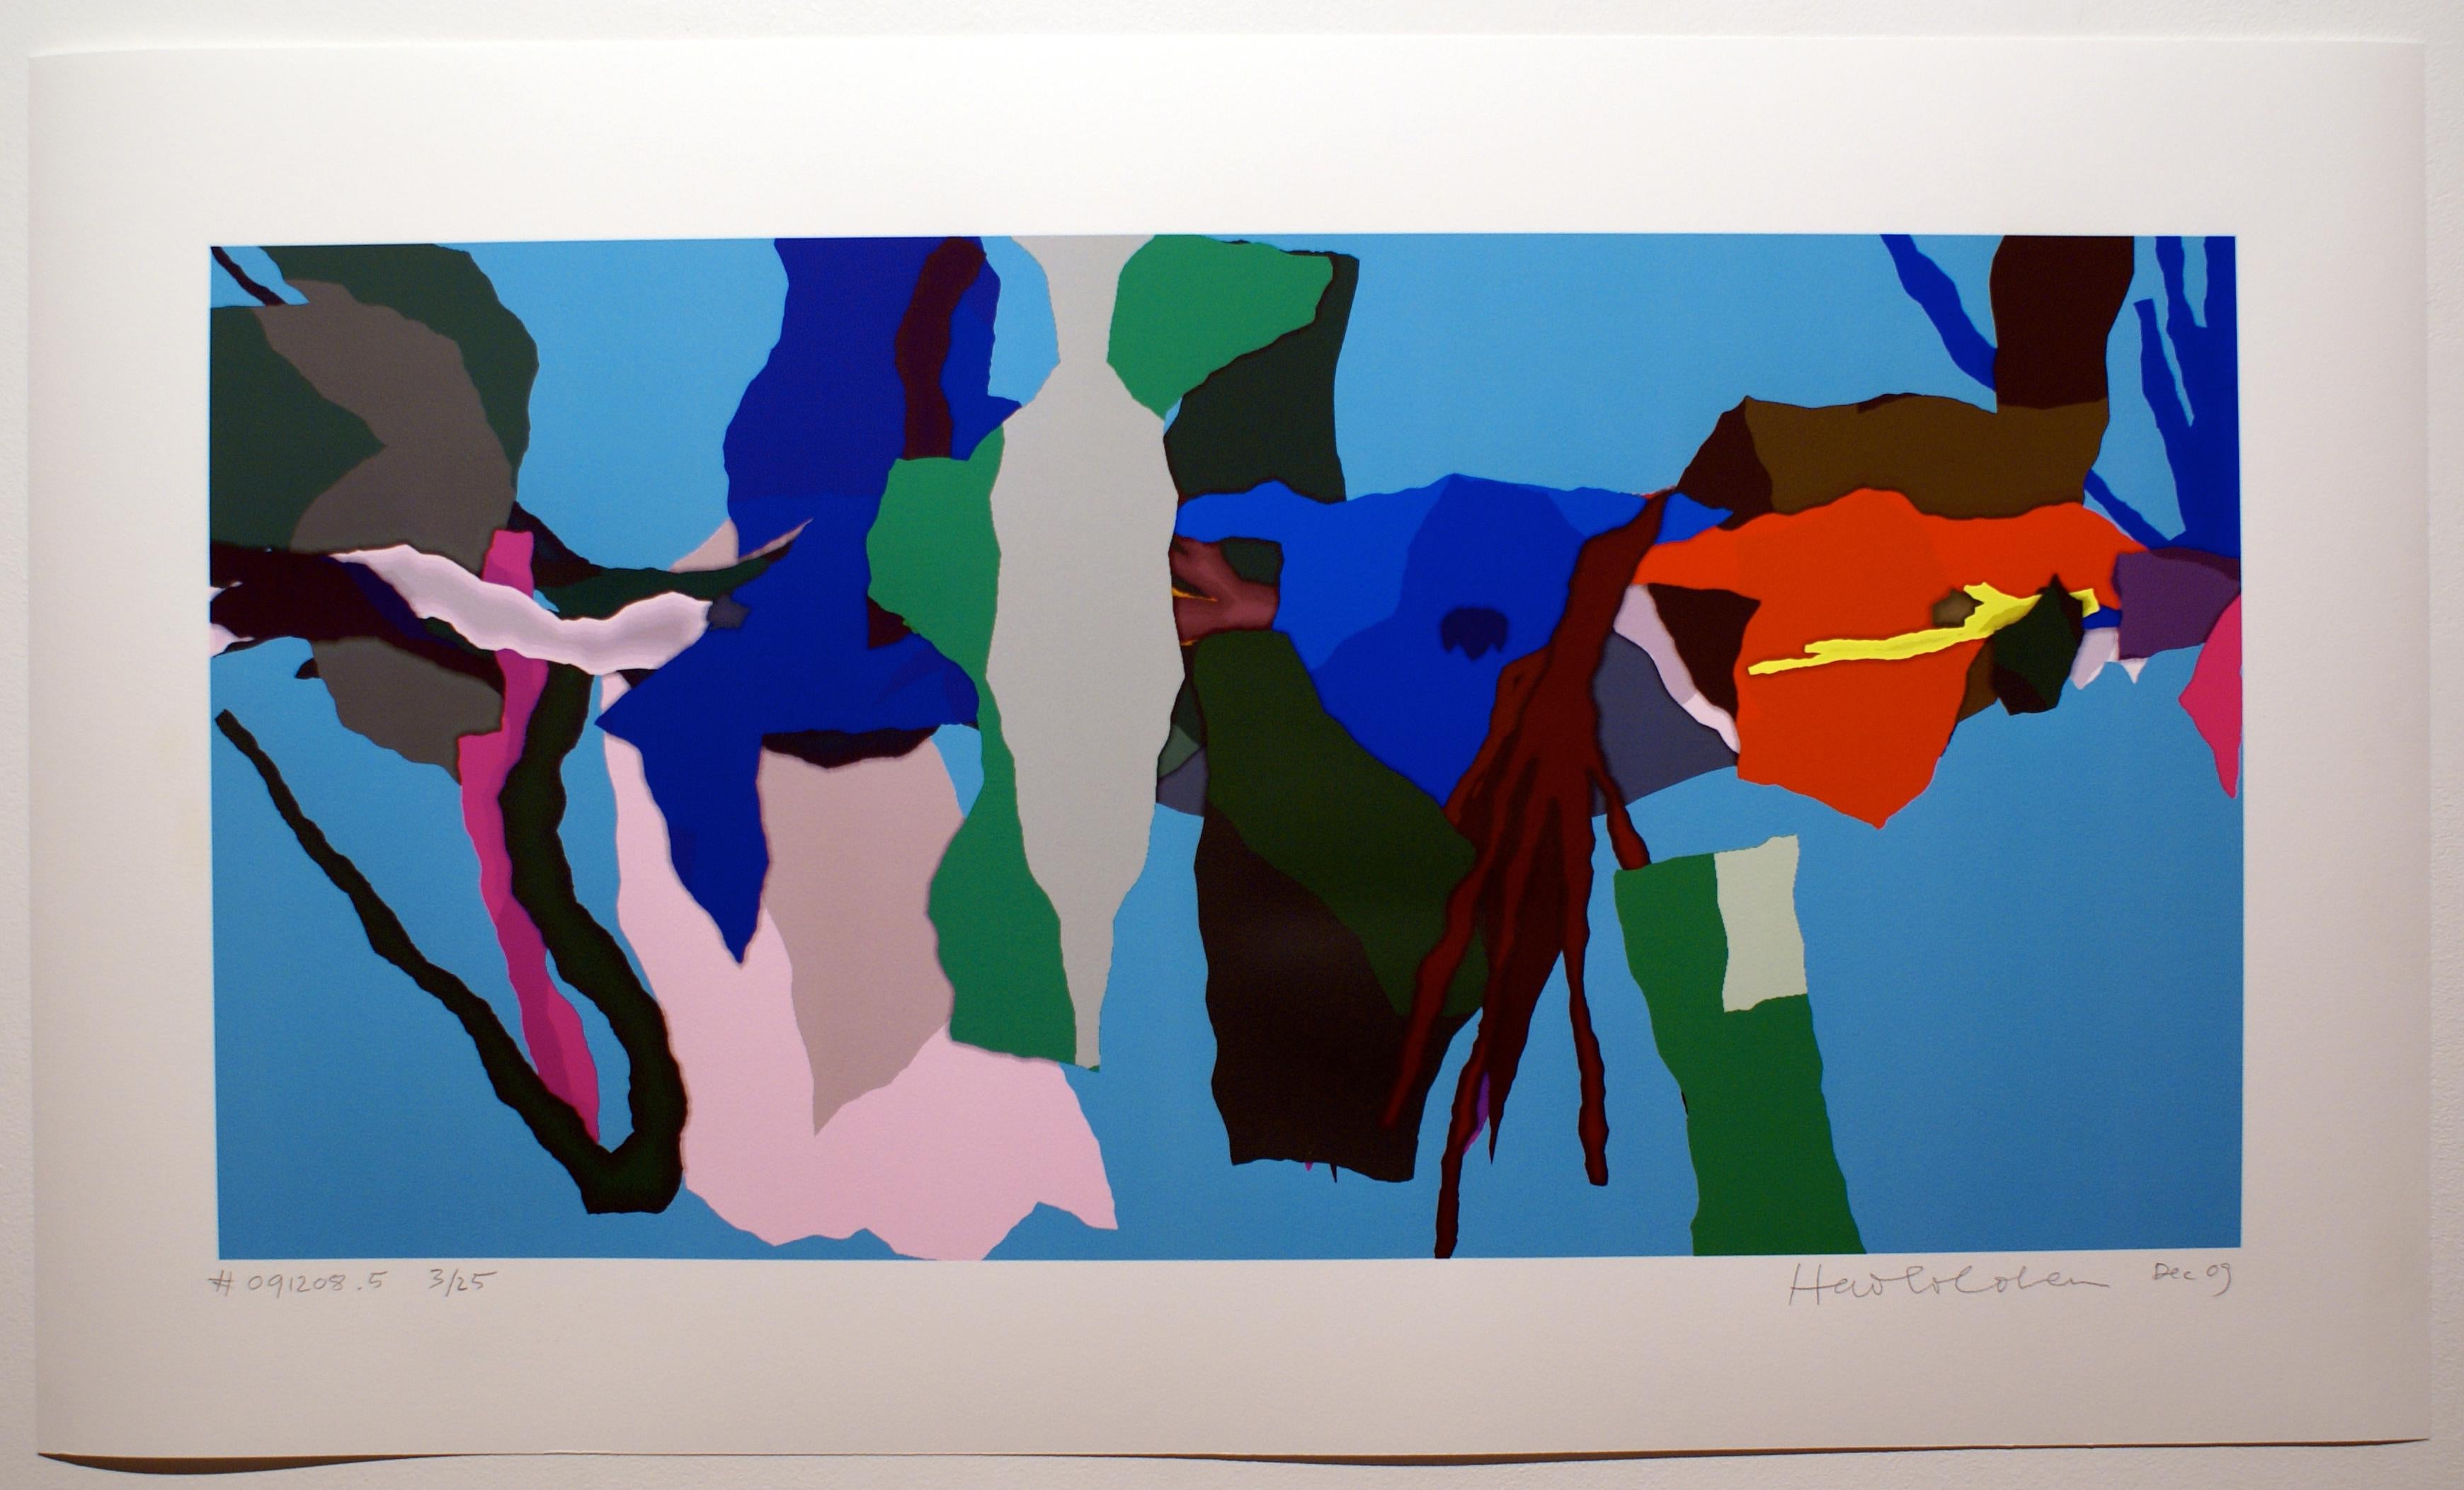 Abstract Print Harold Cohen - # 091208.5